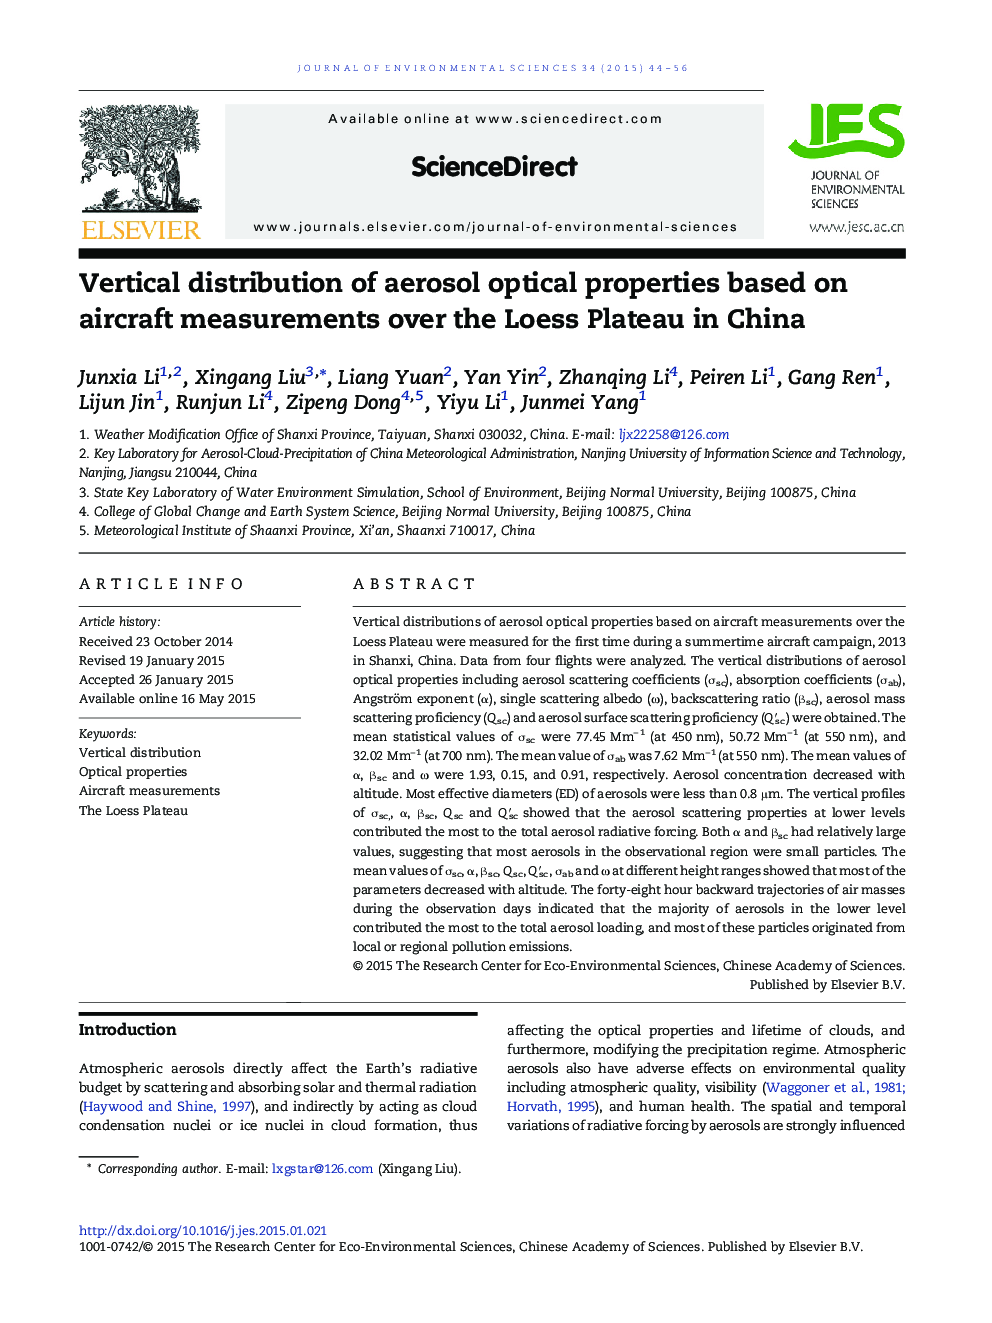 توزیع عمودی خواص نوری آیرزول براساس اندازه گیری های هواپیما در ورق لوز در چین 